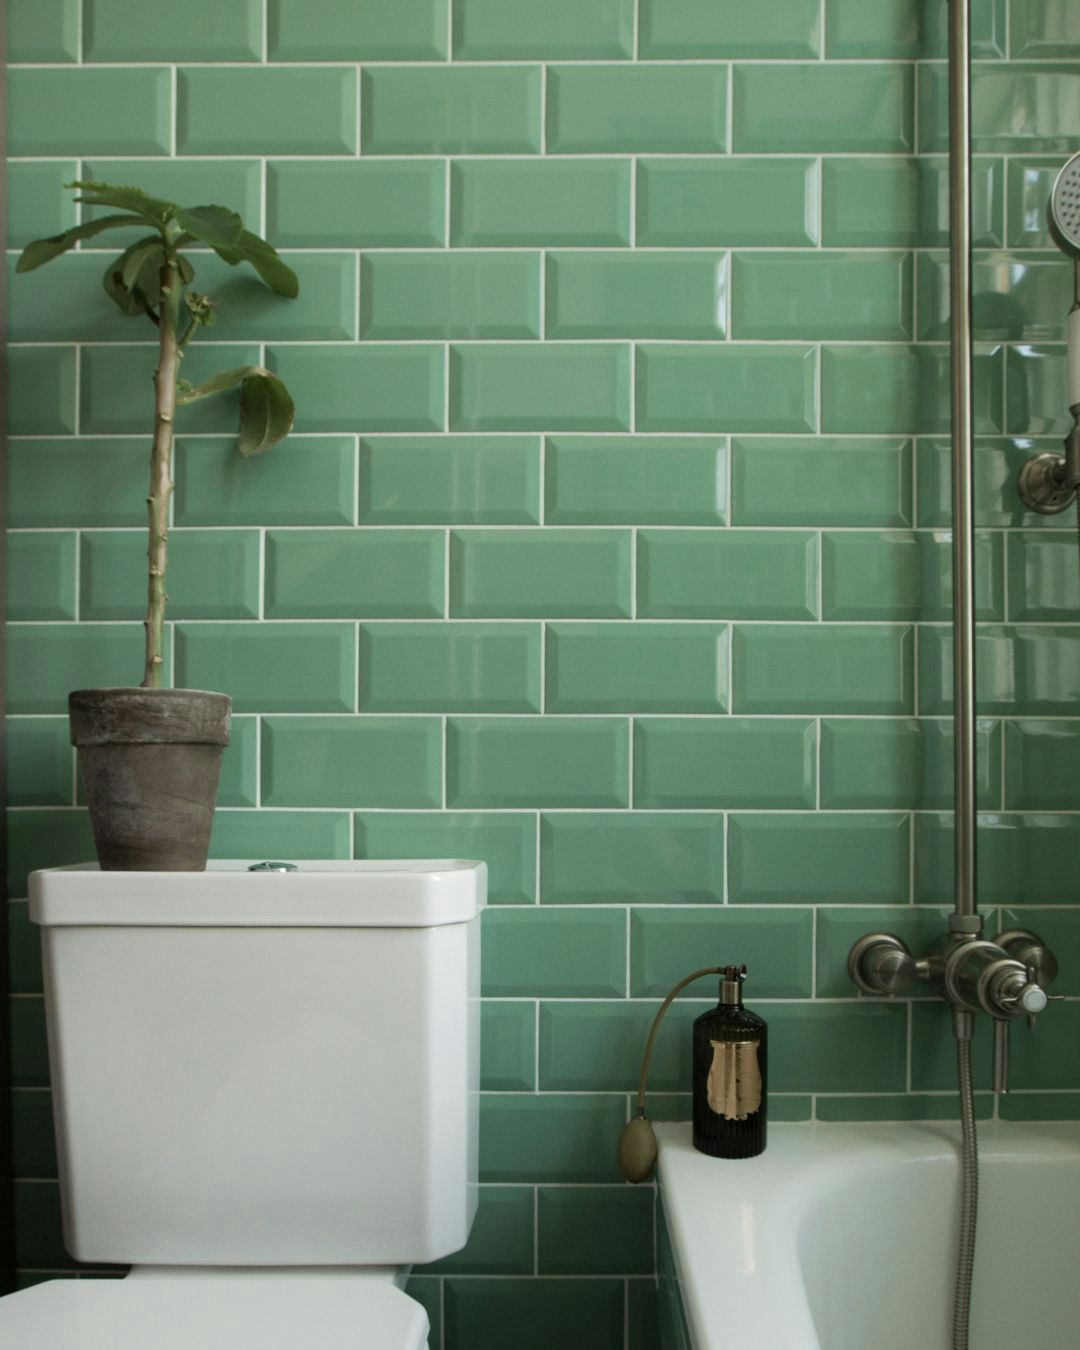 Hvidt toilet på badeværelse med grønne klinker